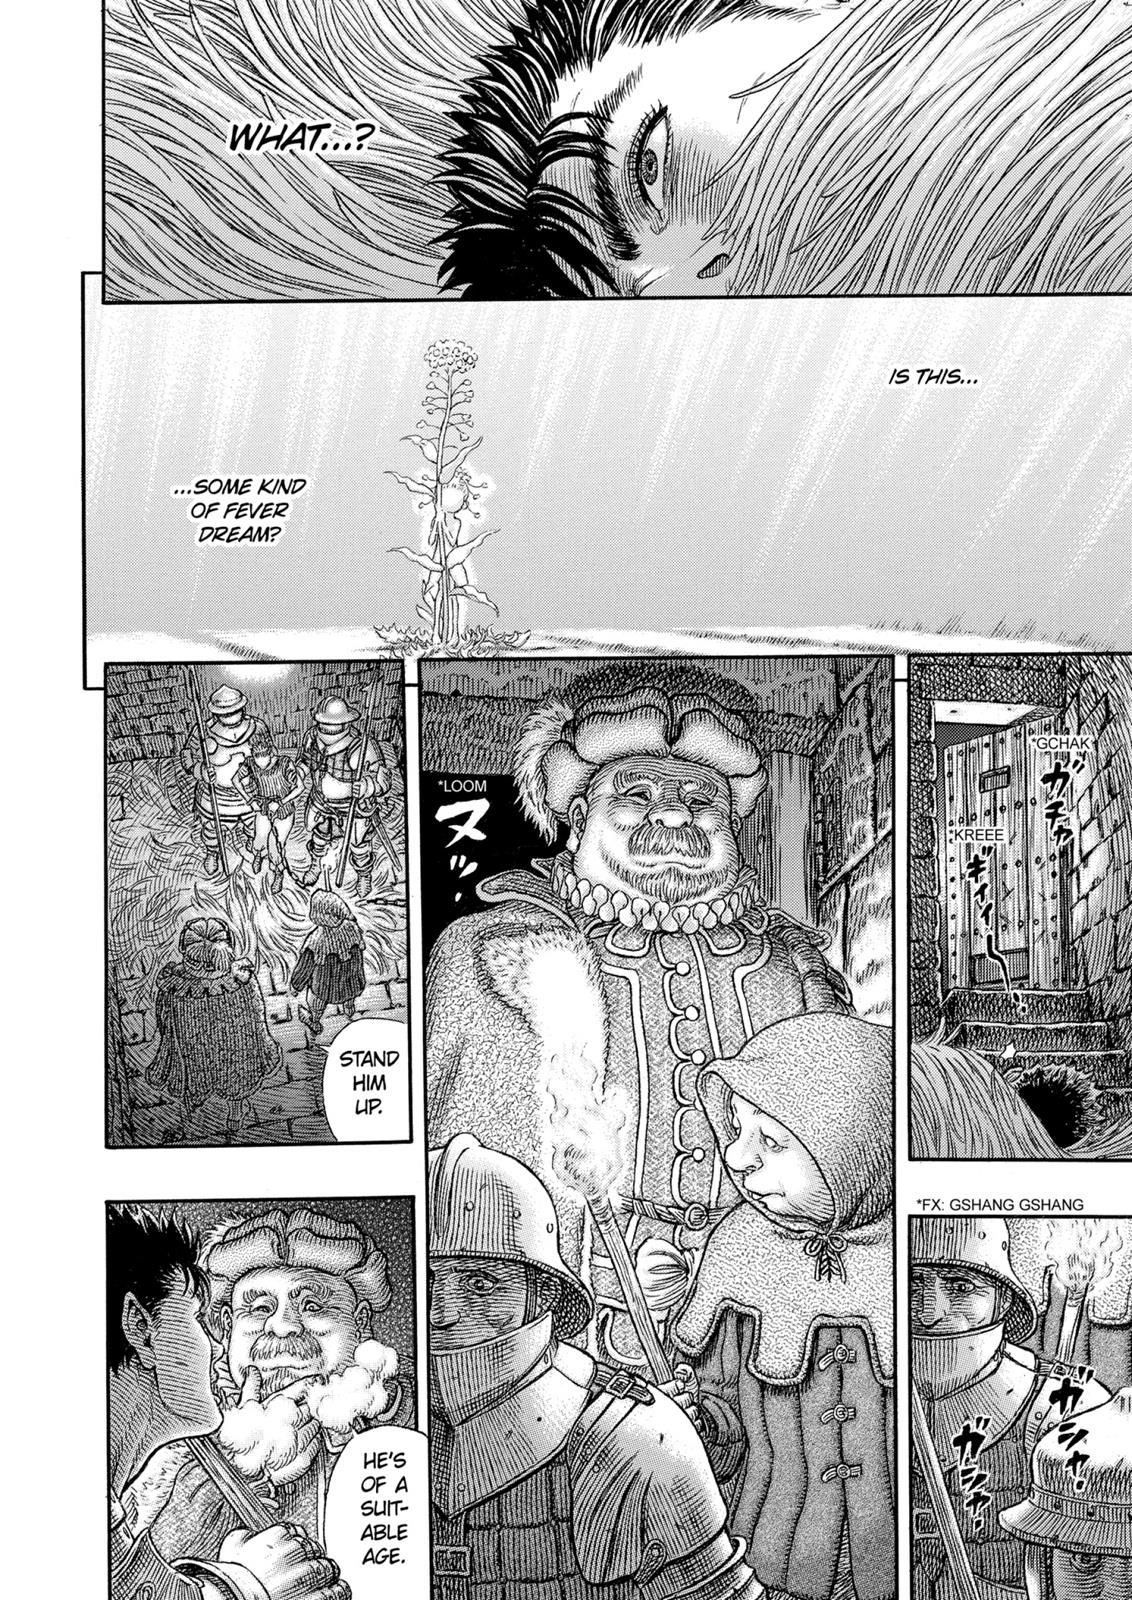 Berserk Manga Chapter 330 image 03